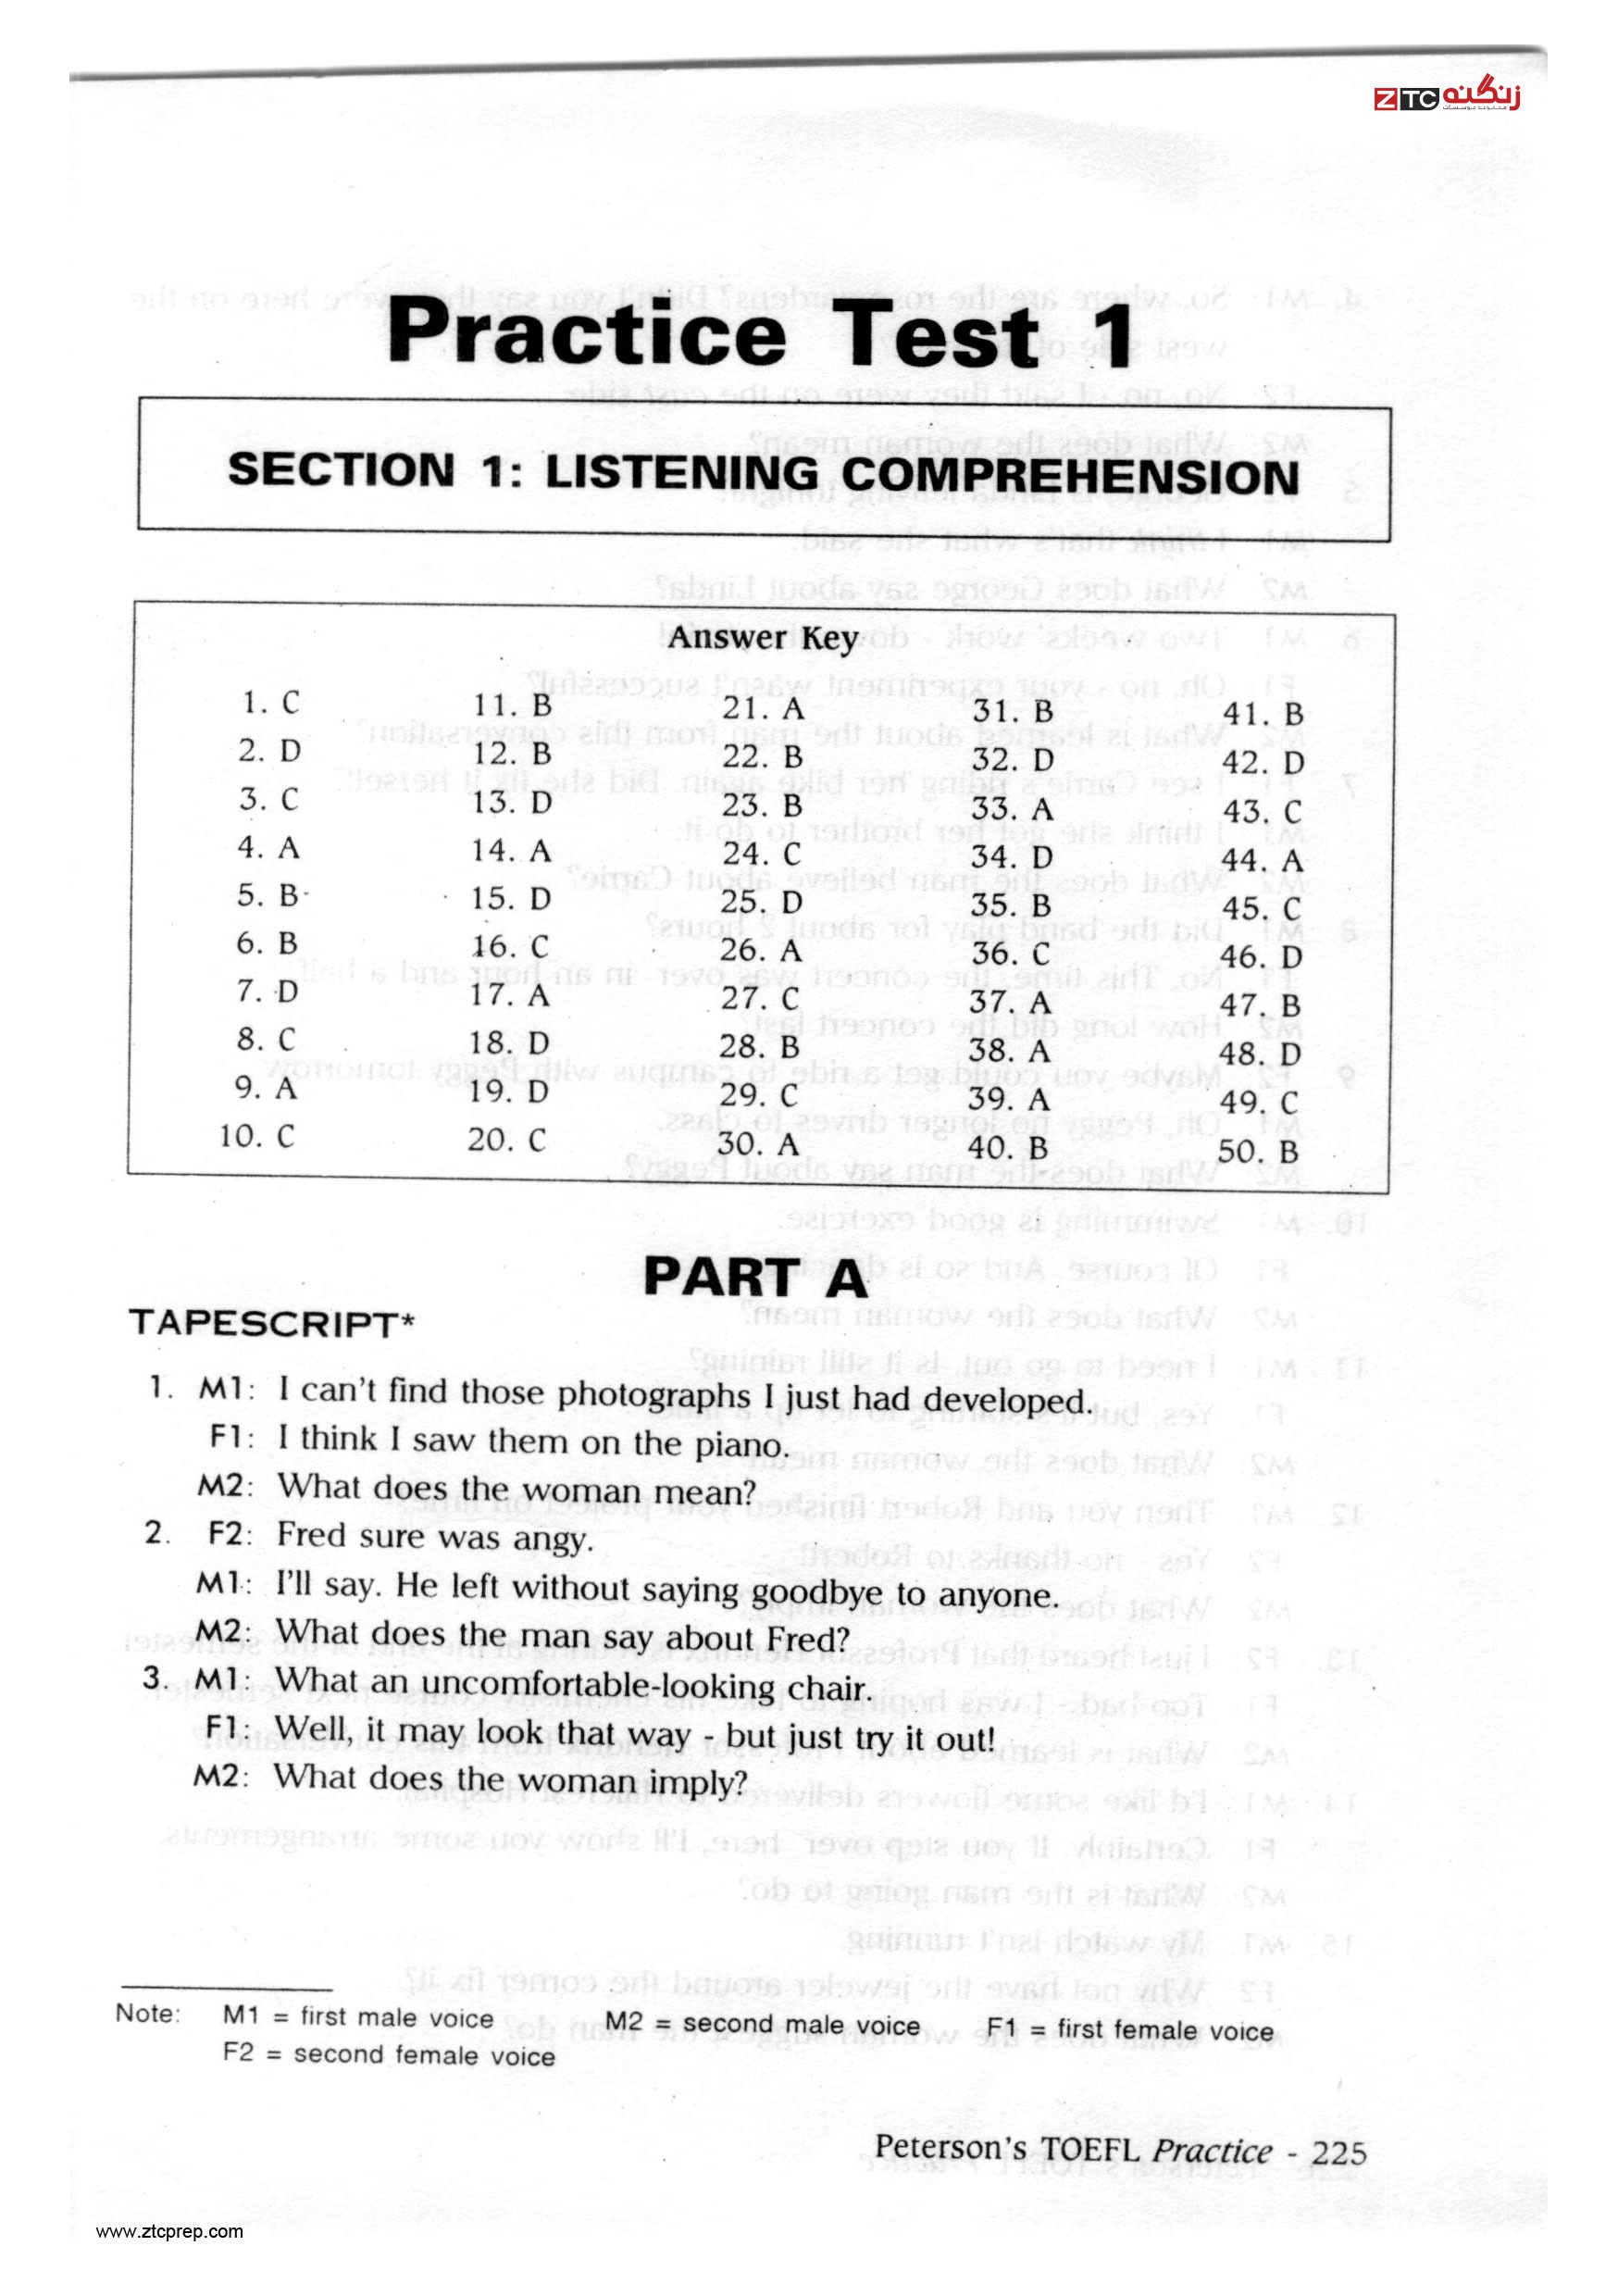 Peterson Practice Test TOEFL PBT